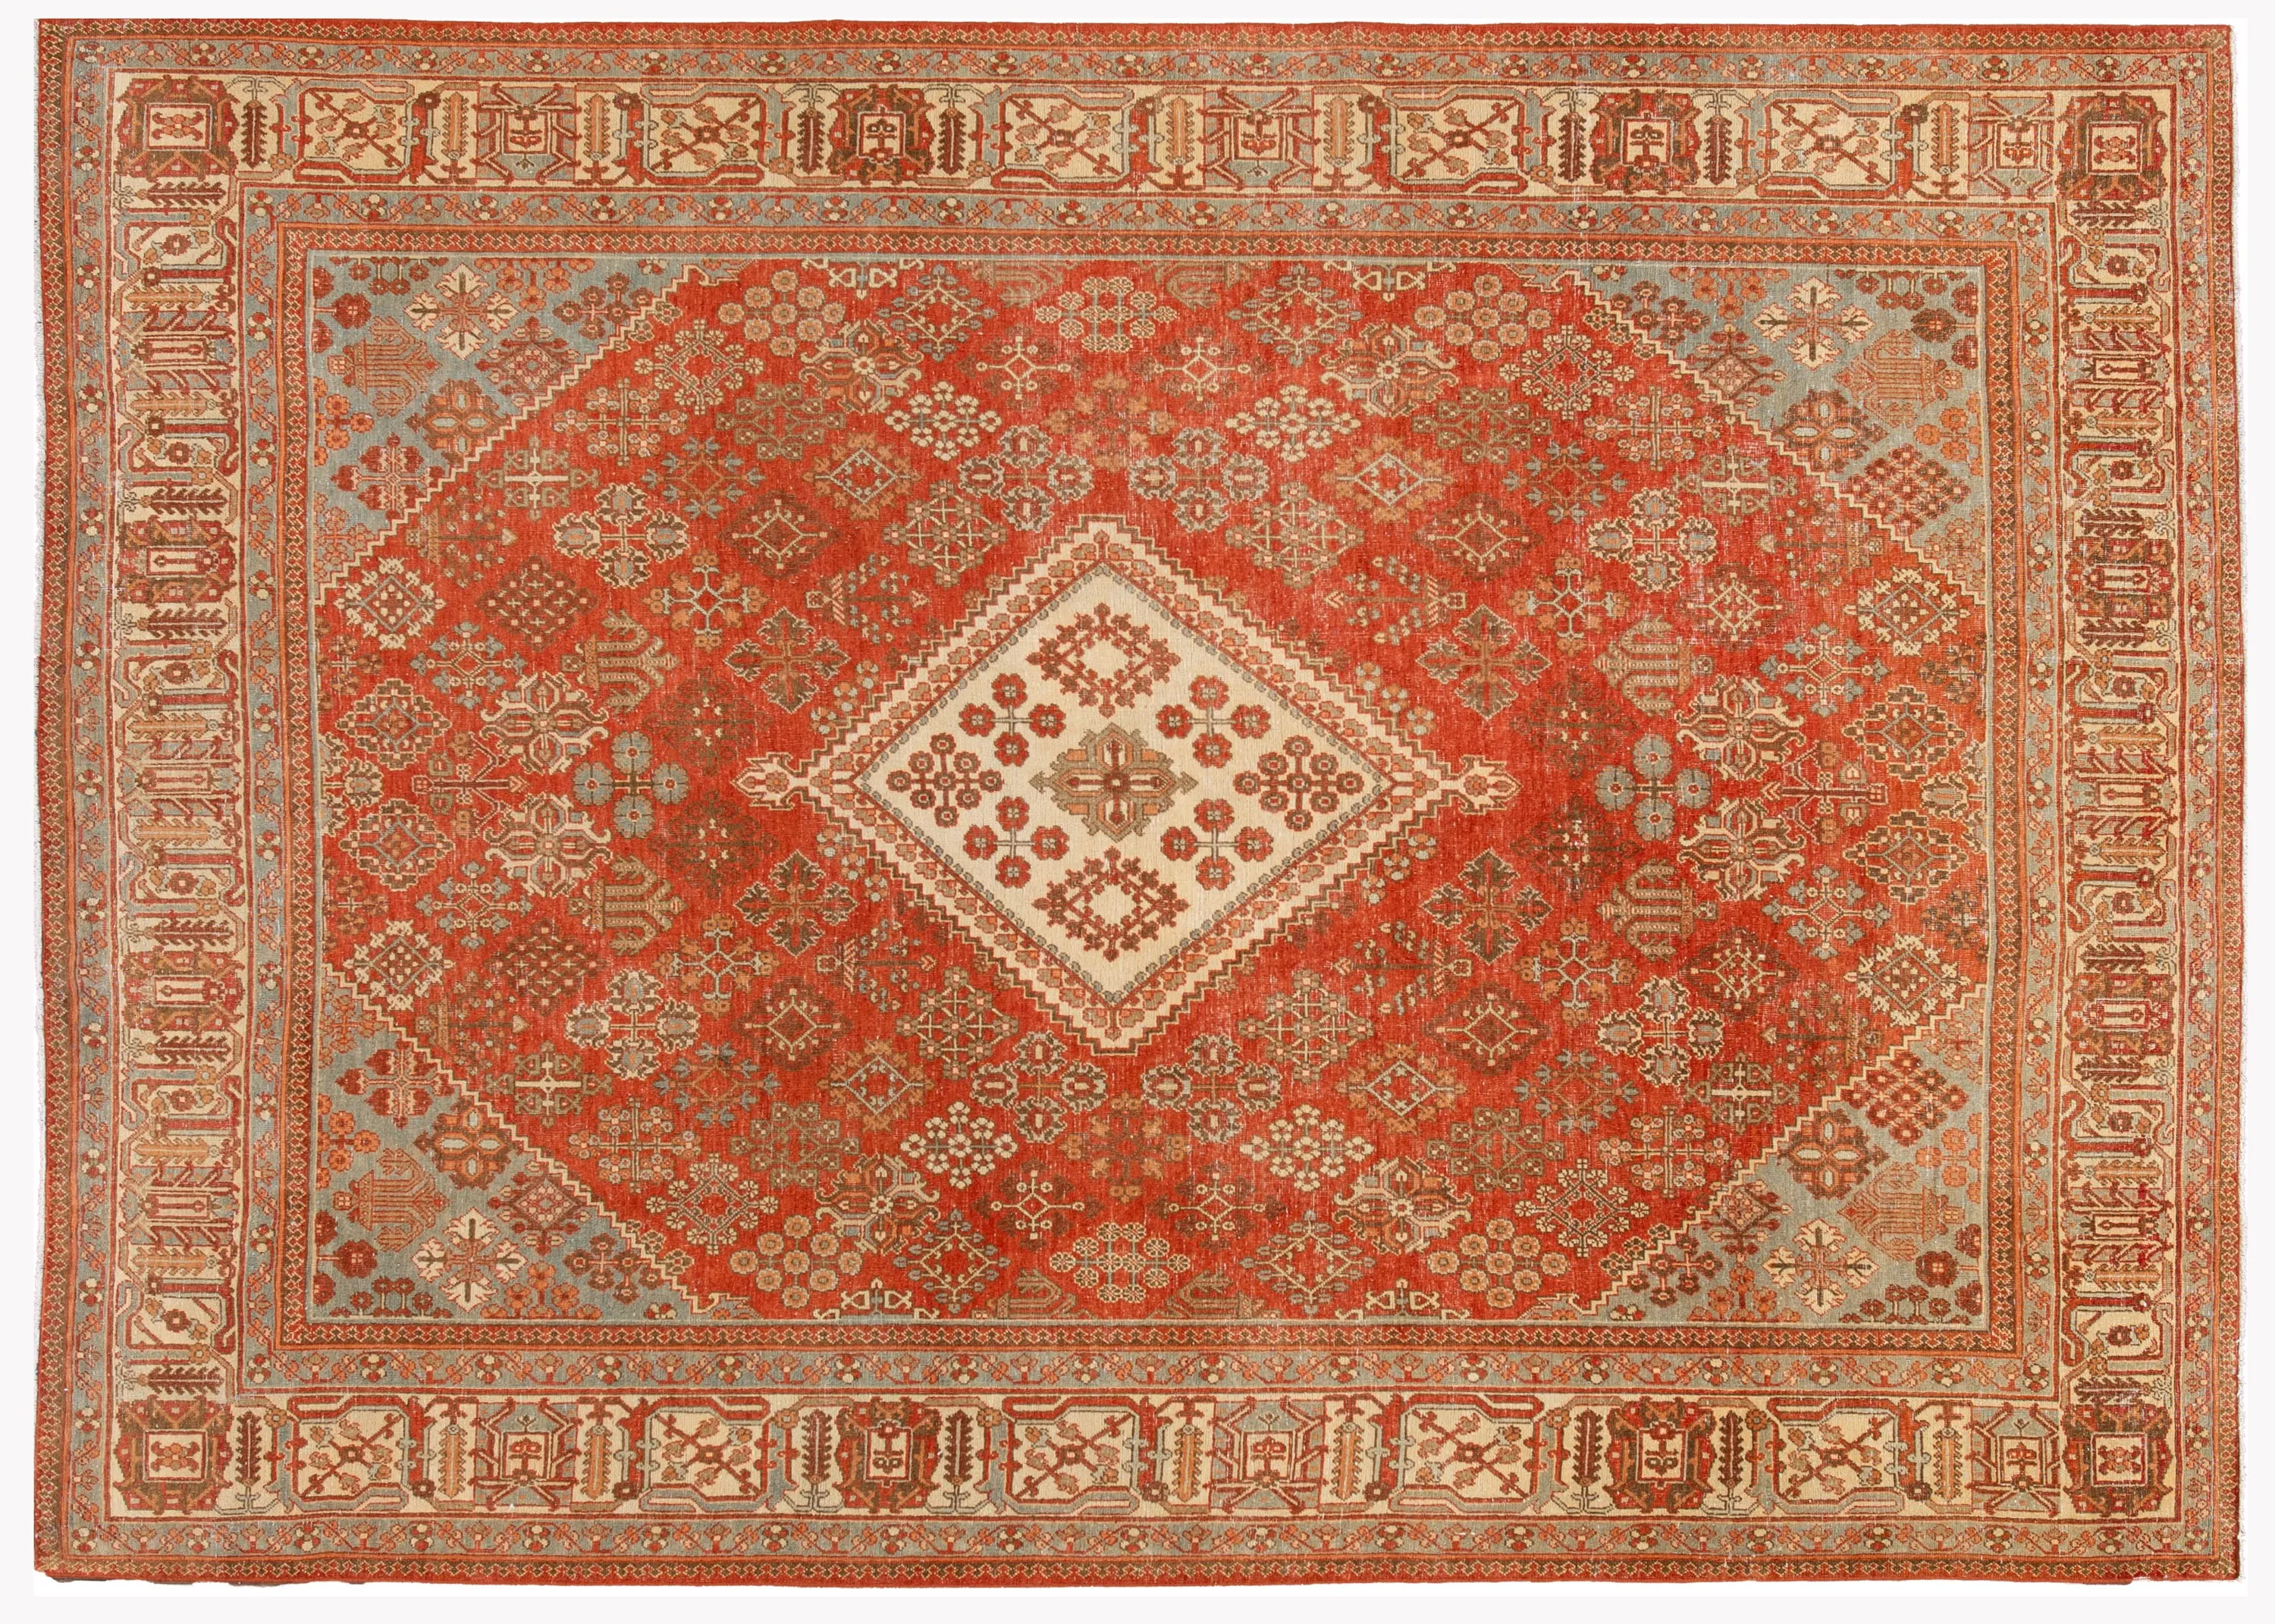 Antique Persian Joshegan Wool Rug - Apadana - Red - Red